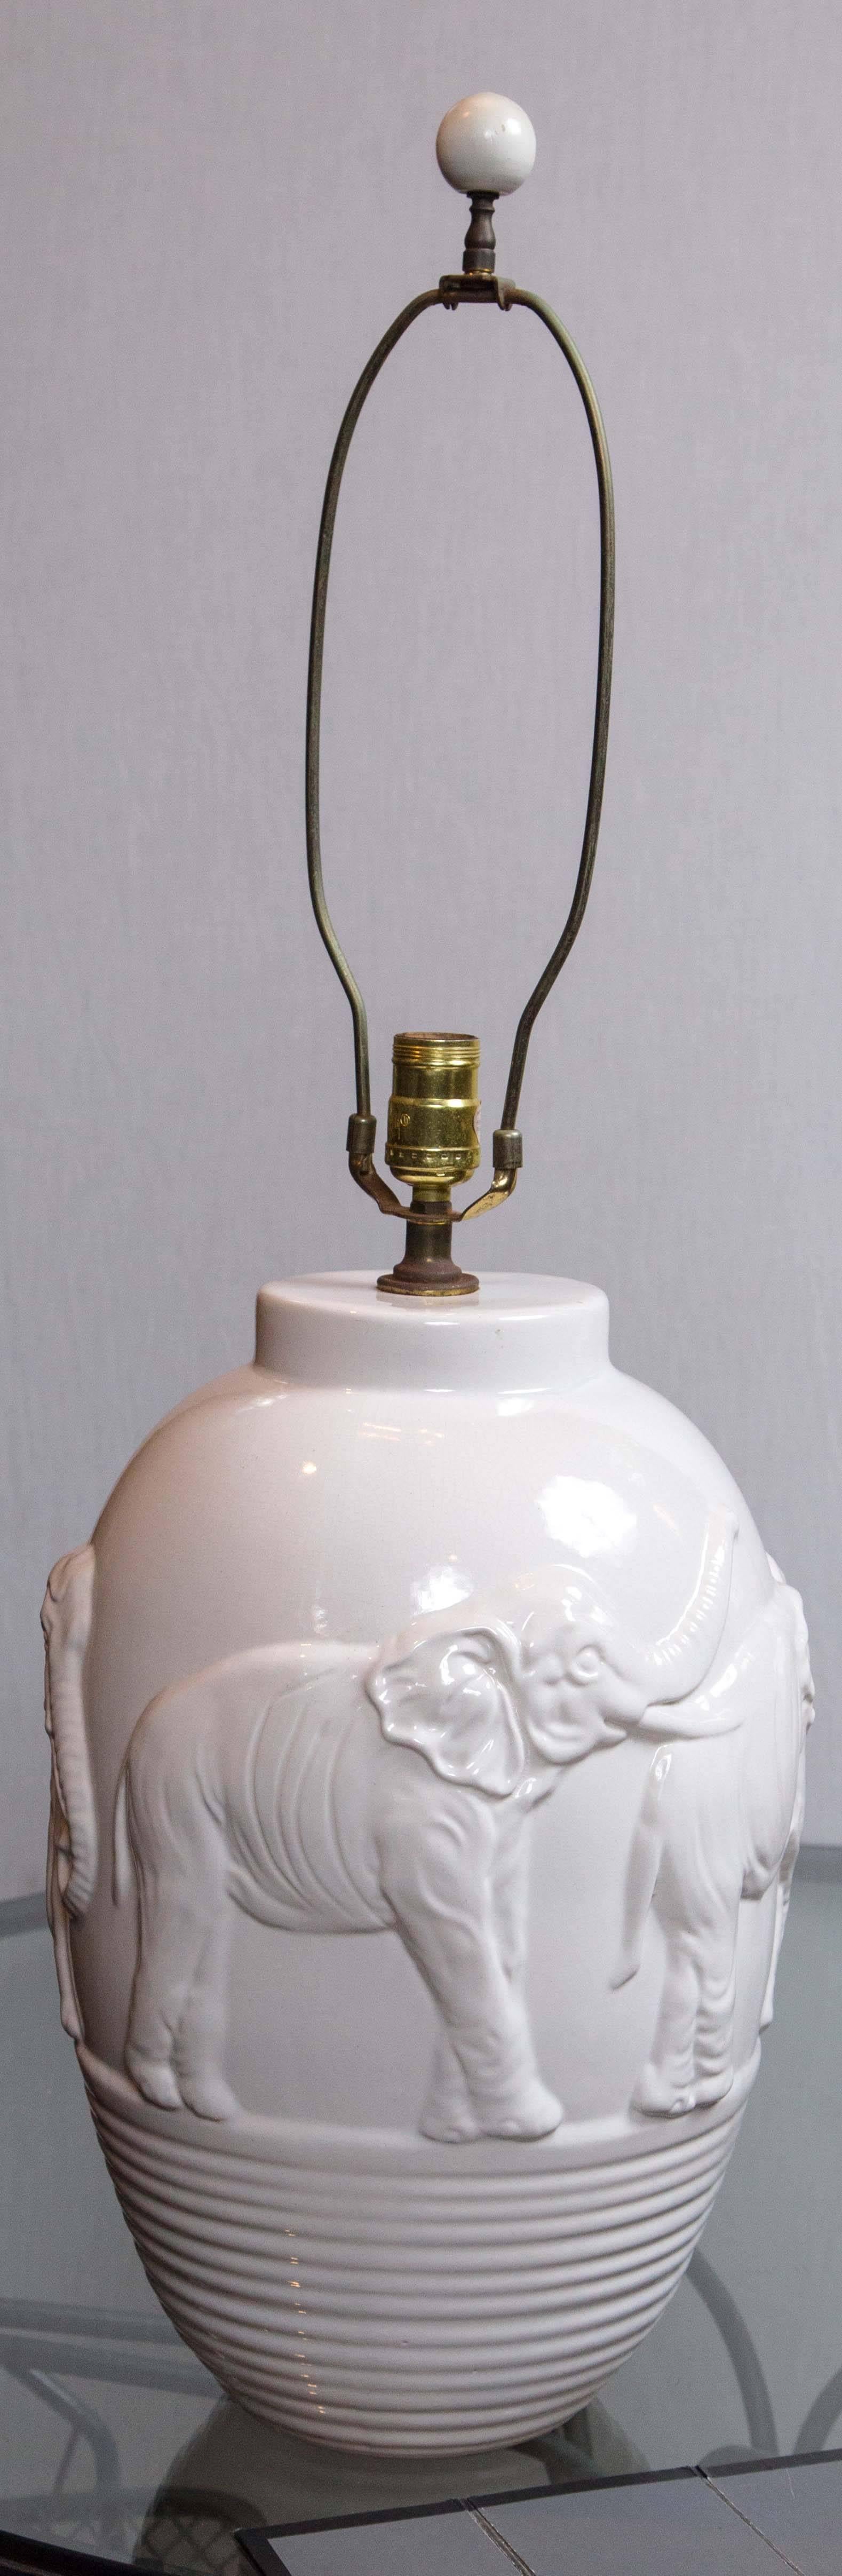 Stylish white ceramic elephant lamp. 17